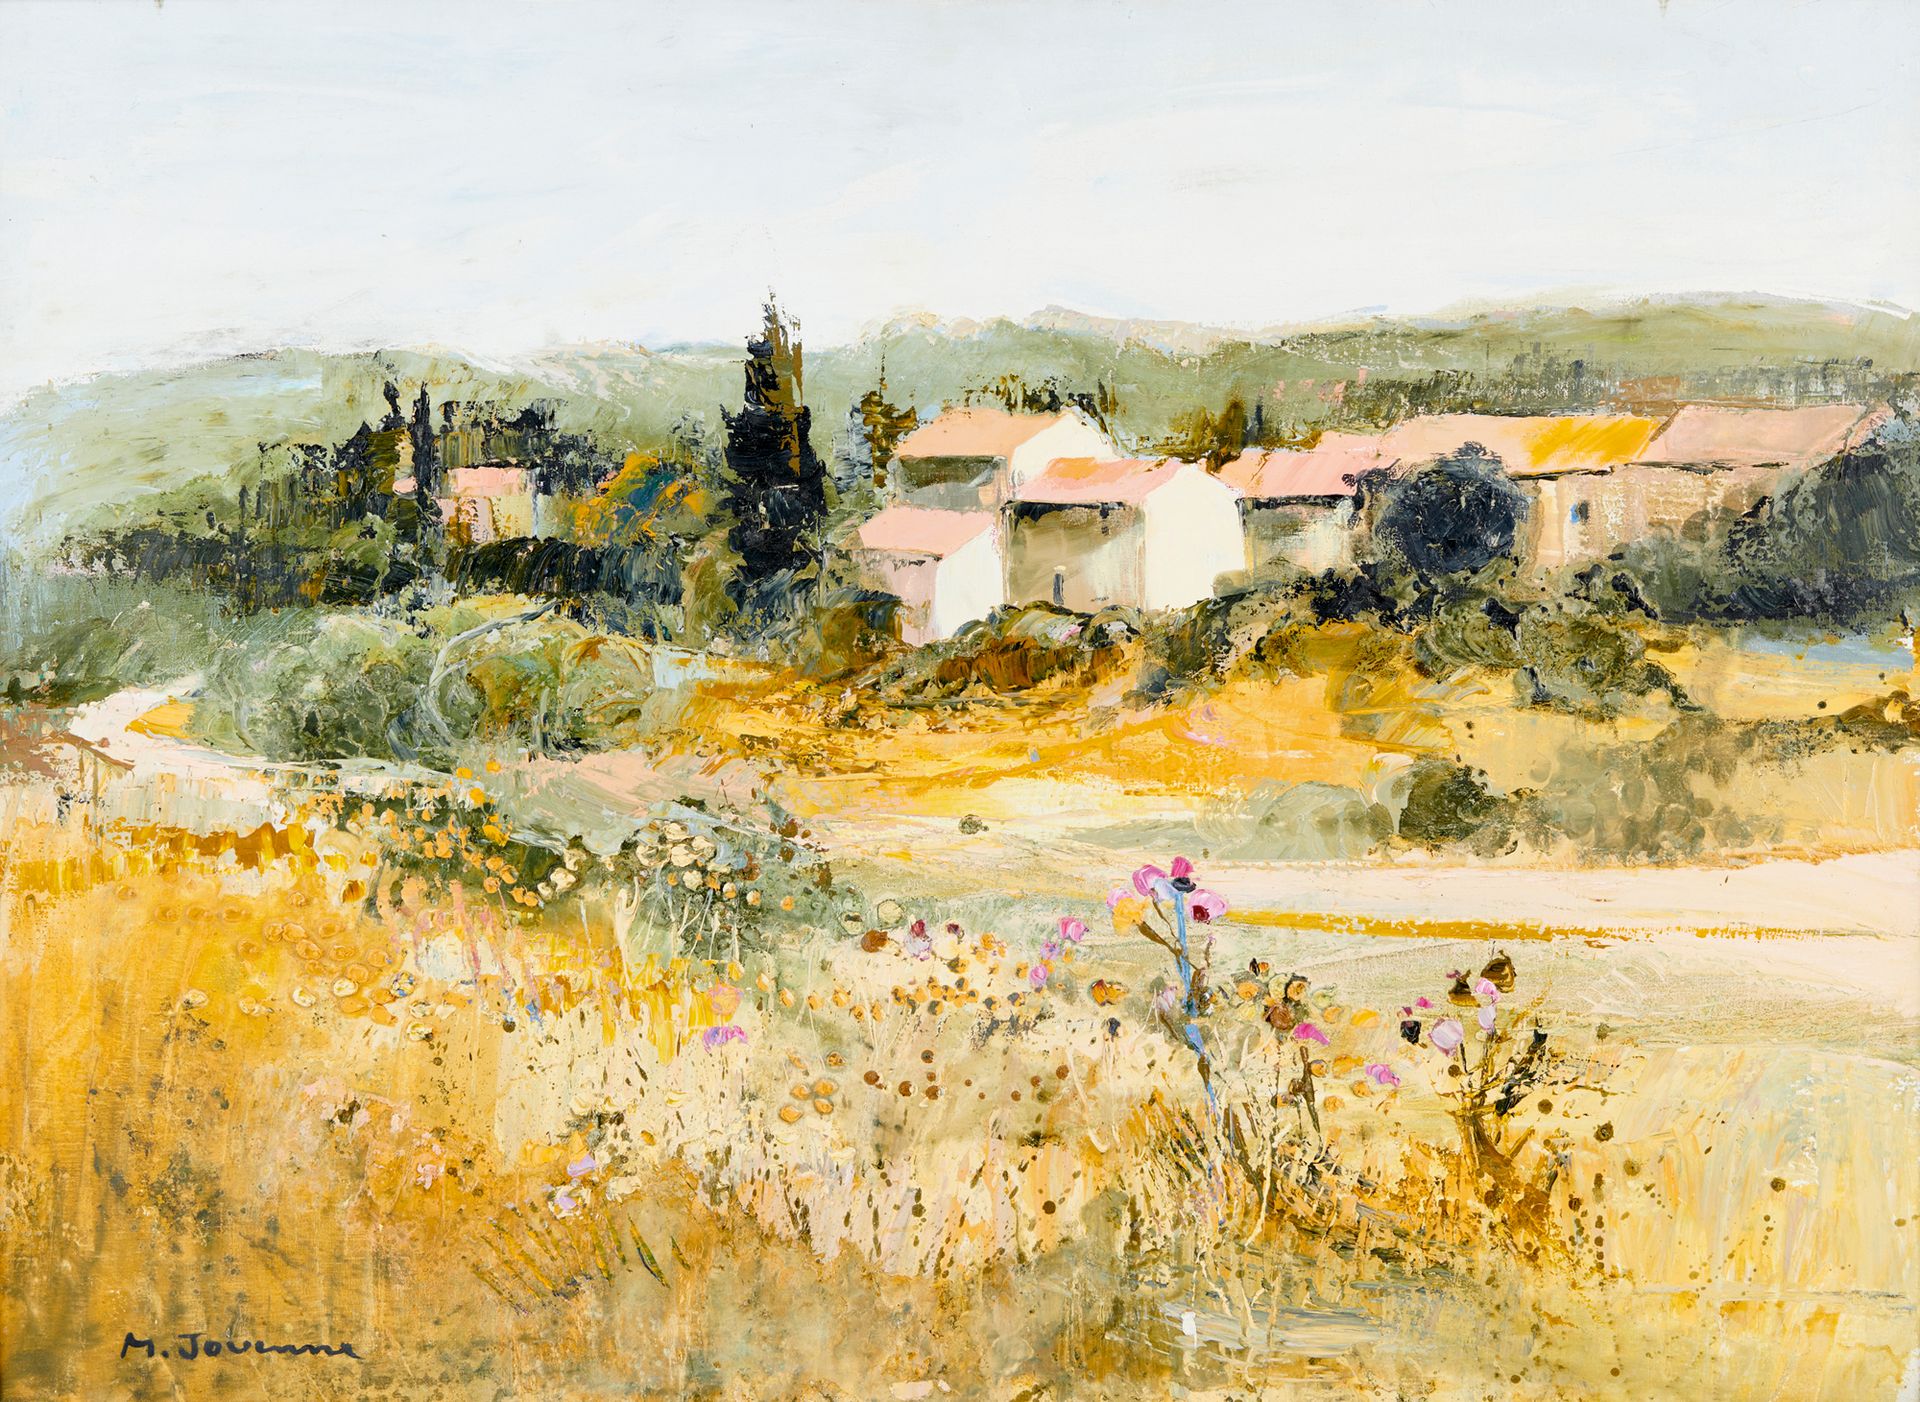 Null 米歇尔-朱安纳，生于1933年

盛开的普罗旺斯

布面油画，左下角有签名

73 x 100